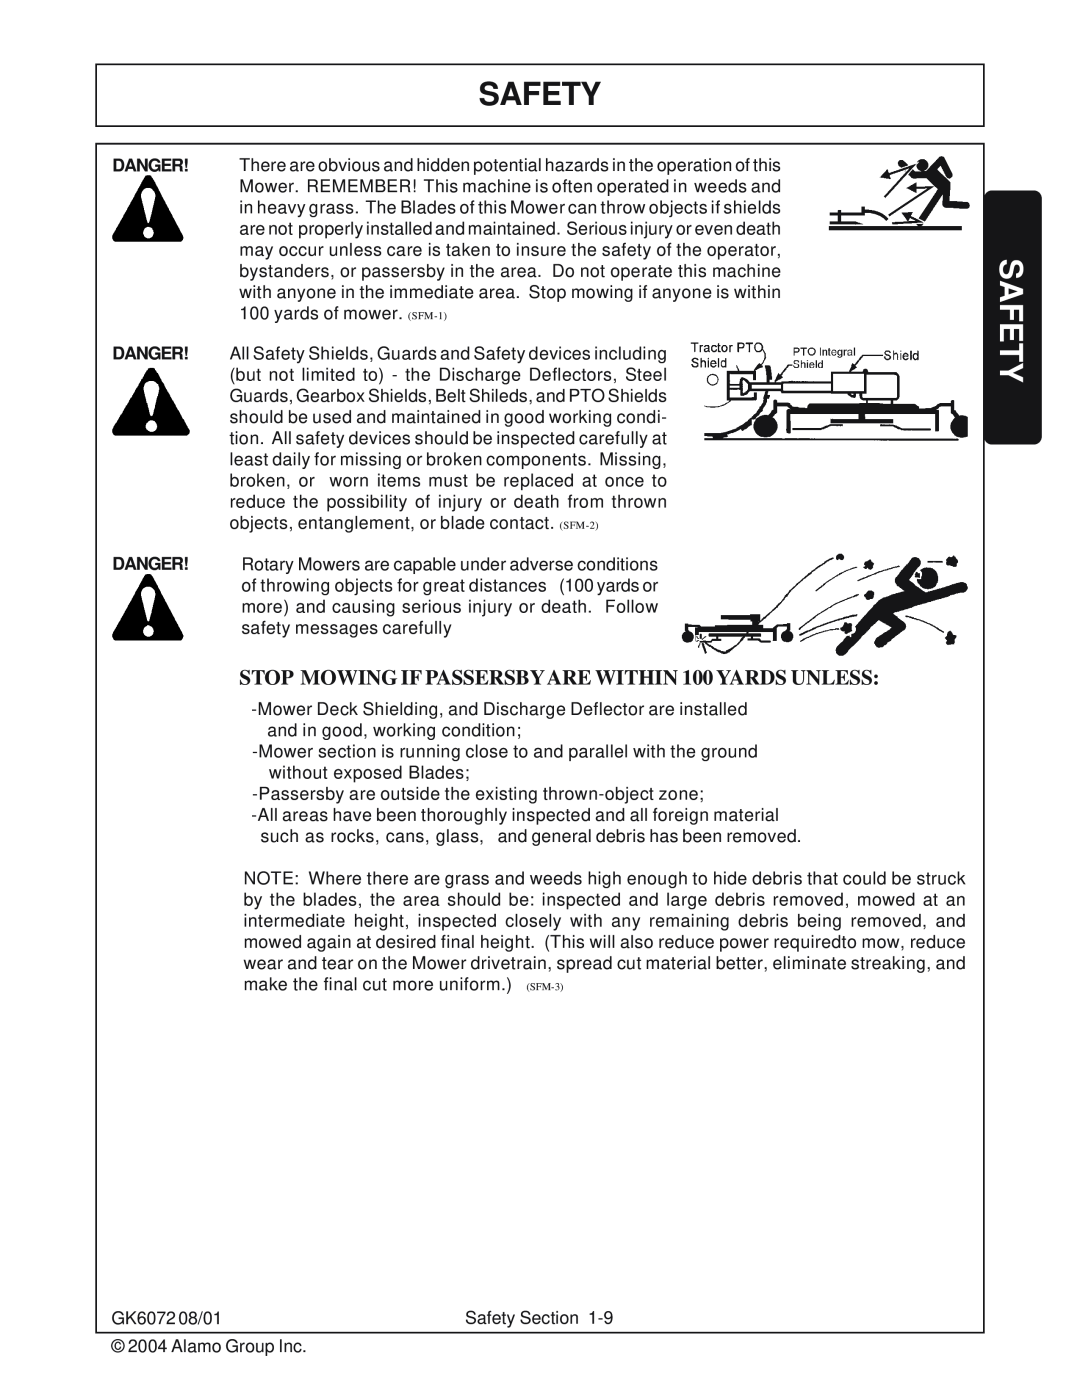 Rhino Mounts manual Safety, GK6072 08/01 